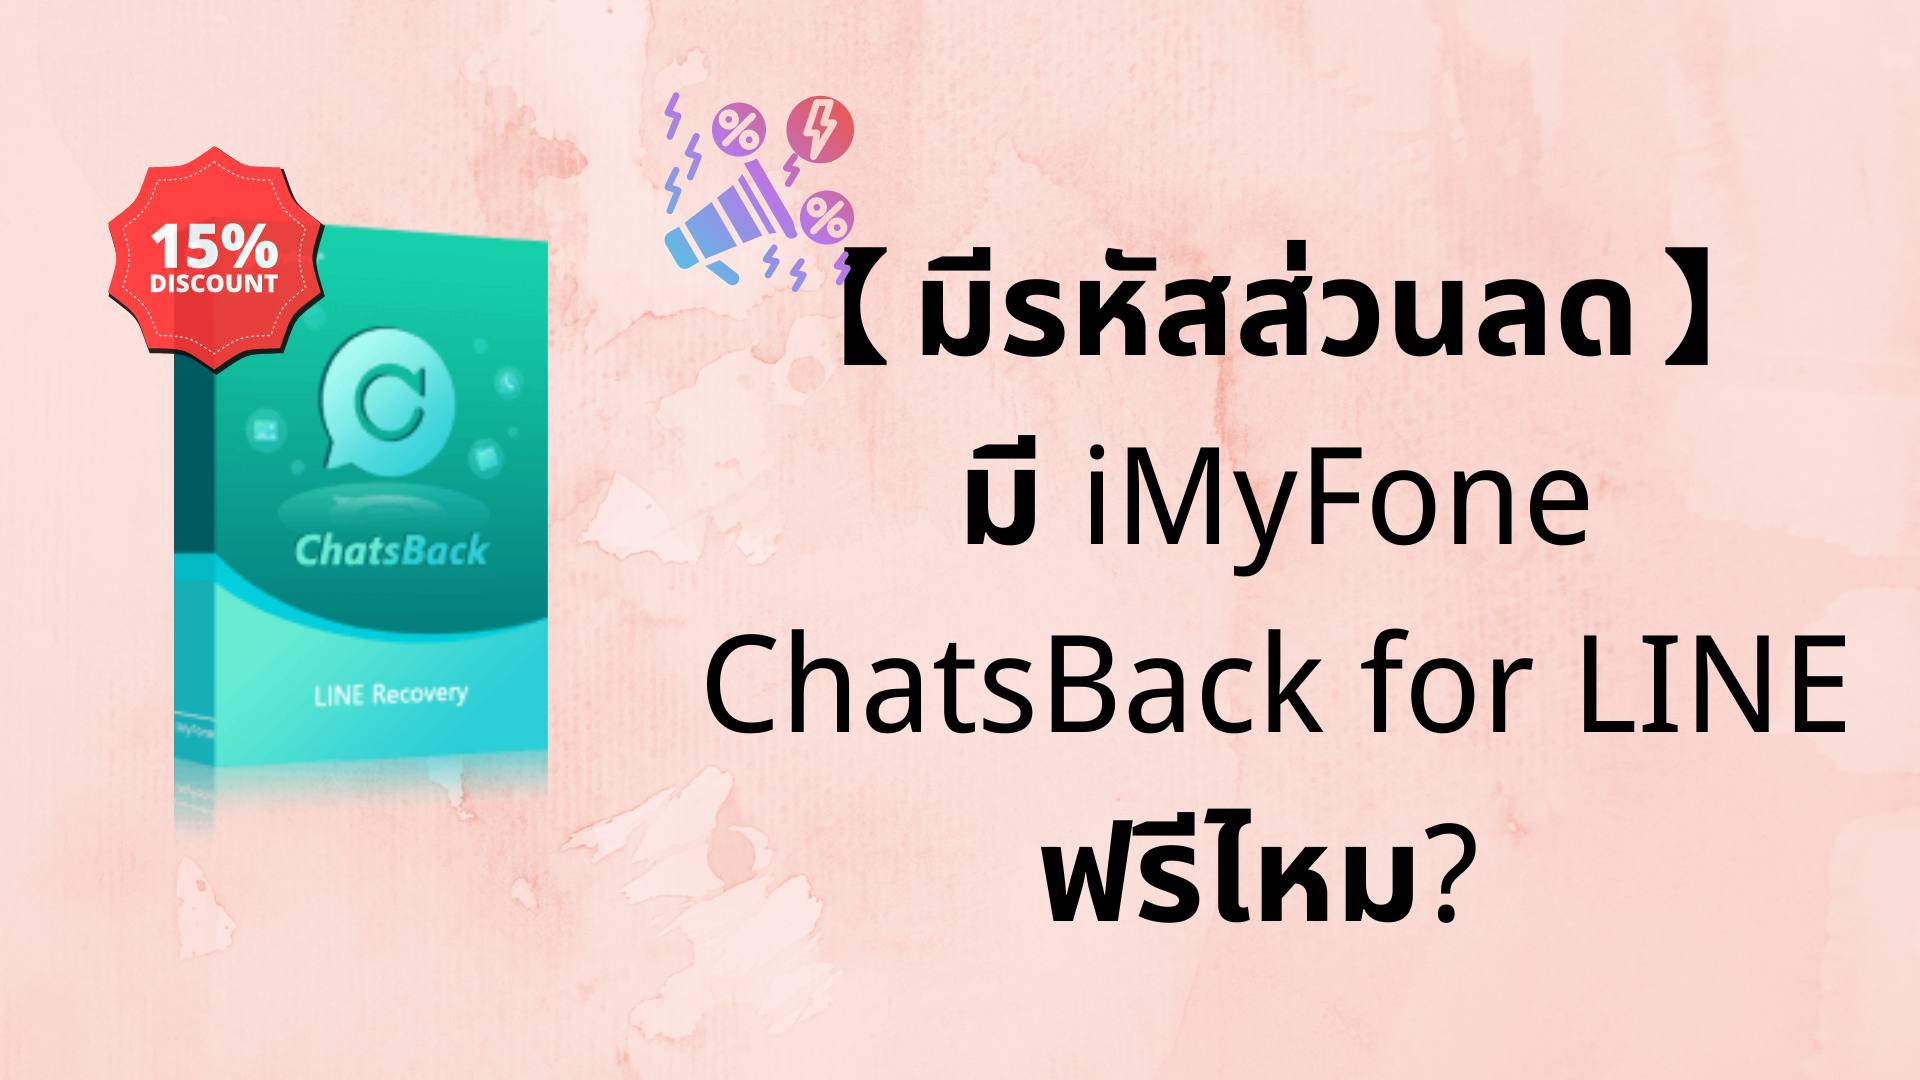 【มีรหัสส่วนลด】มี iMyFone ChatsBack for LINE ฟรีไหม?